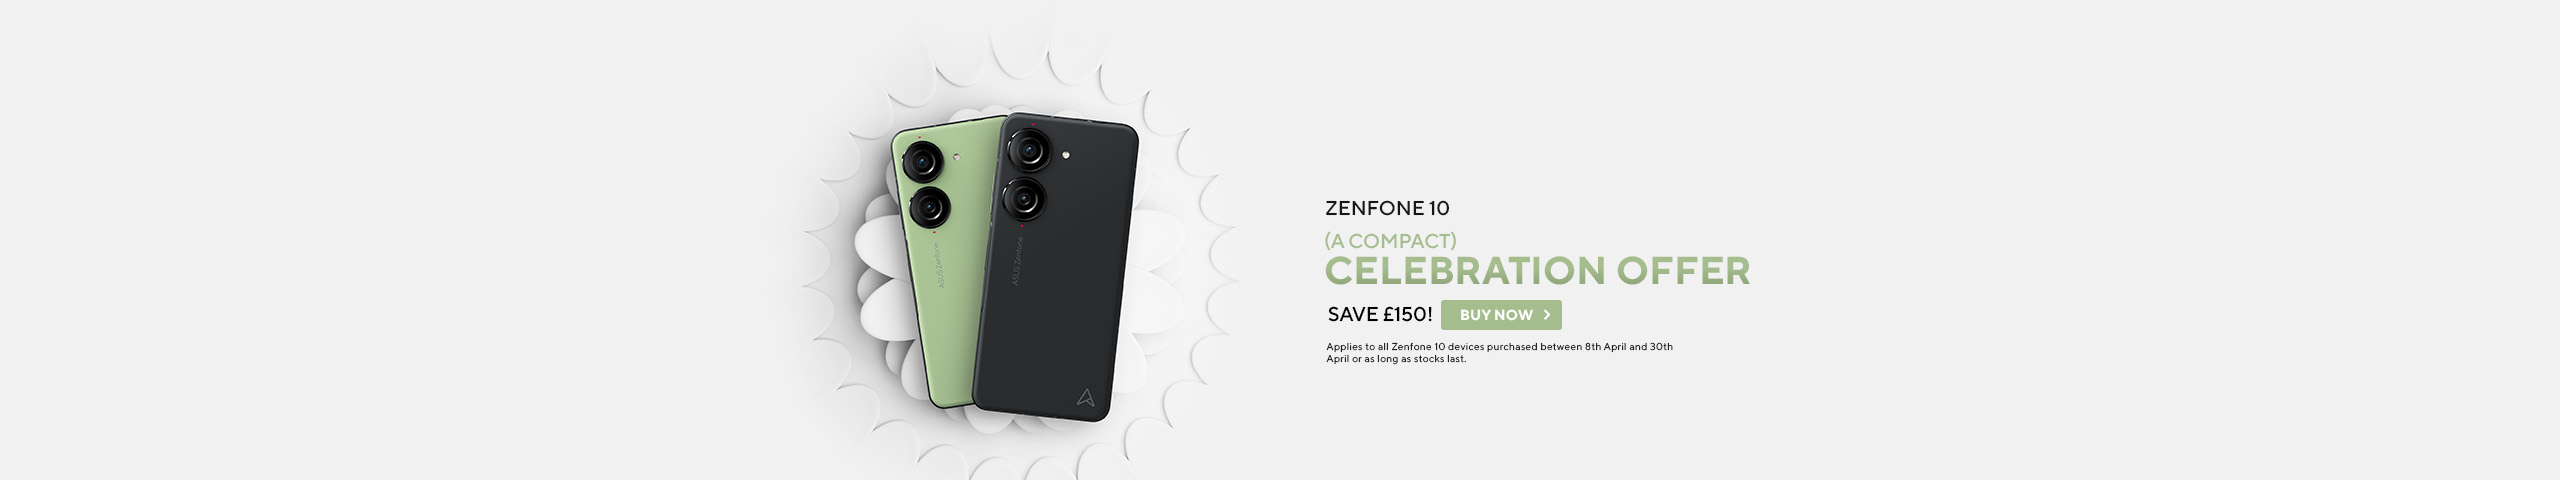 Zenfone 10 Offer